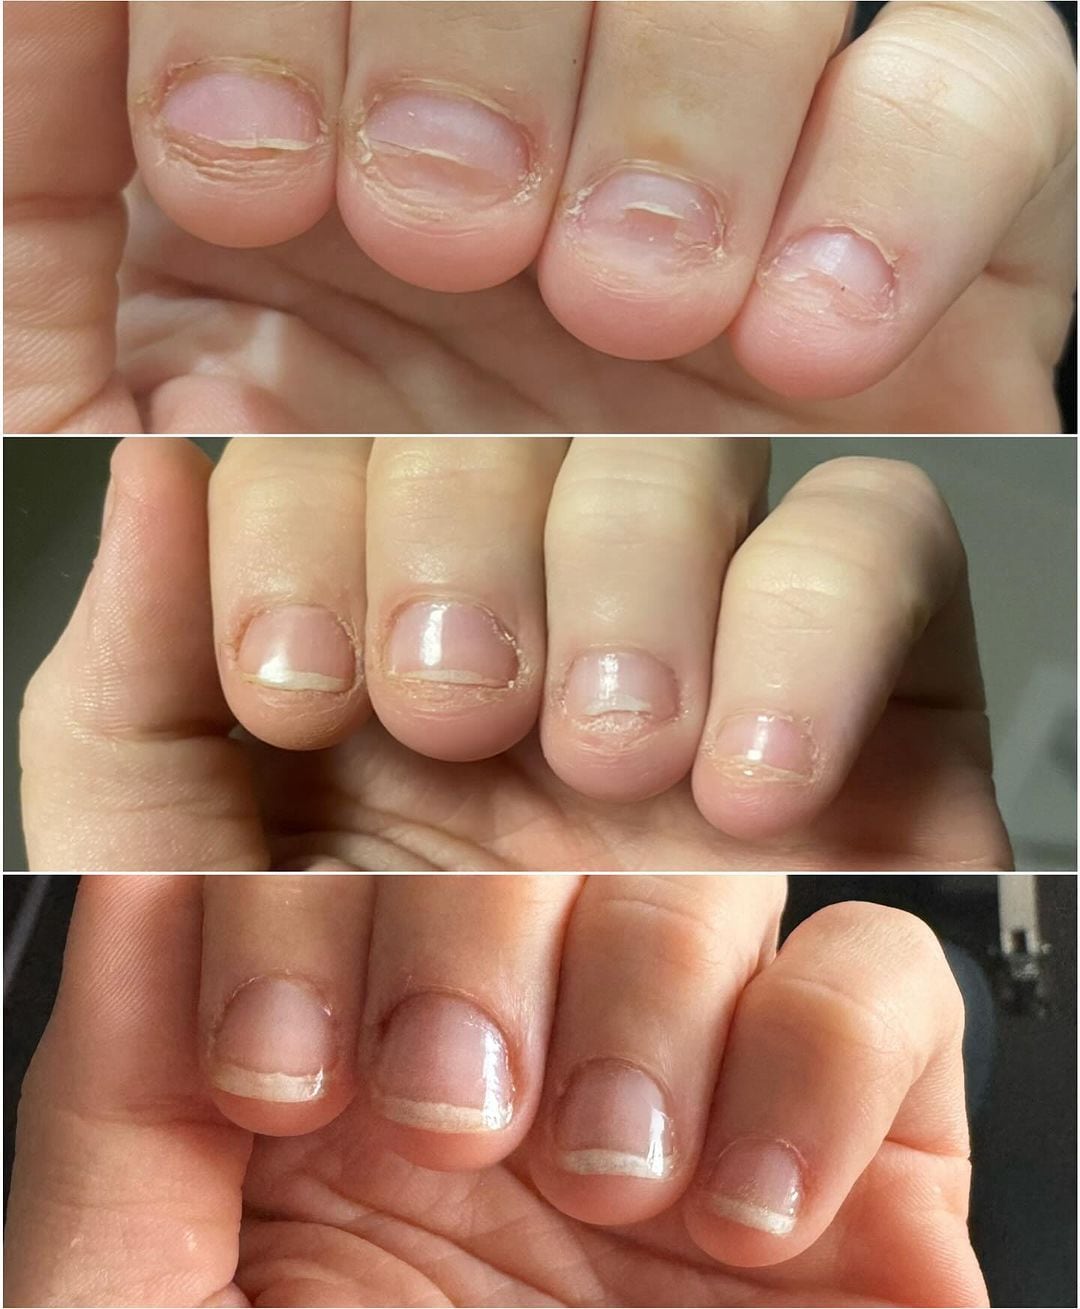 Lele Pons comparte la evolución de sus uñas